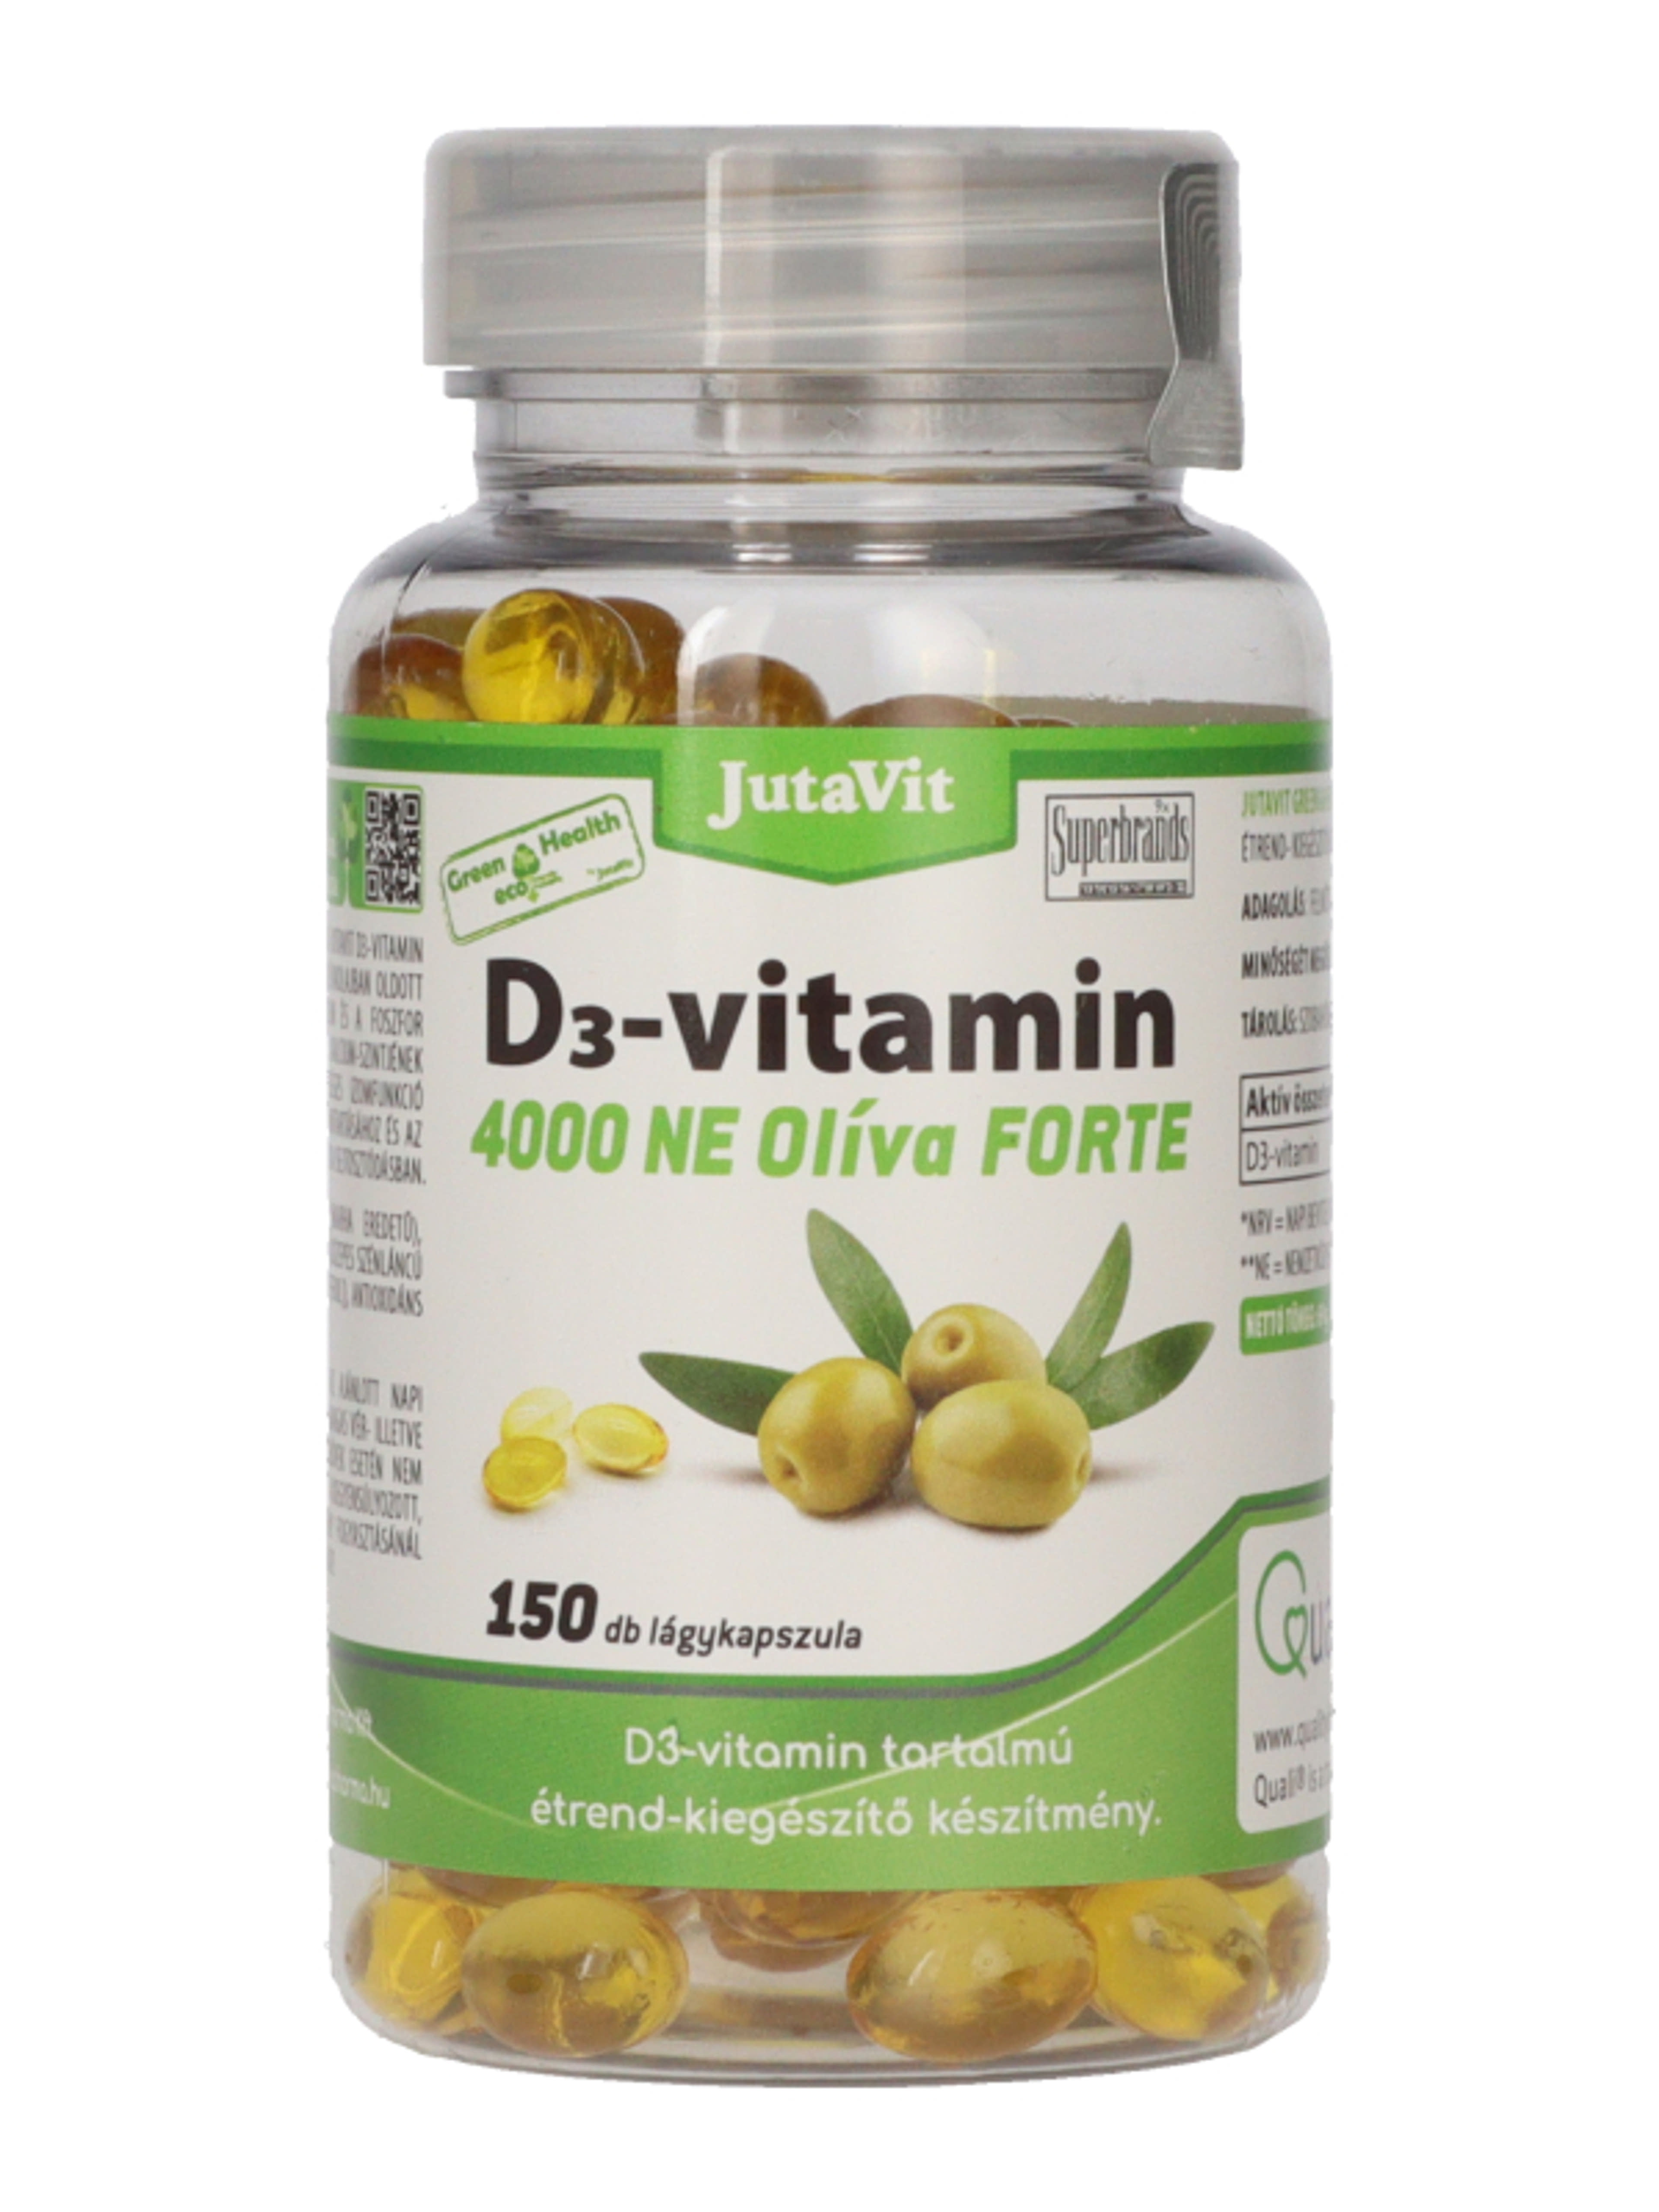 Jutavit Green & Health D3-vitamin 4000 NE Olíva Forte étrend-kiegészítő lágykapszula - 150 db-2